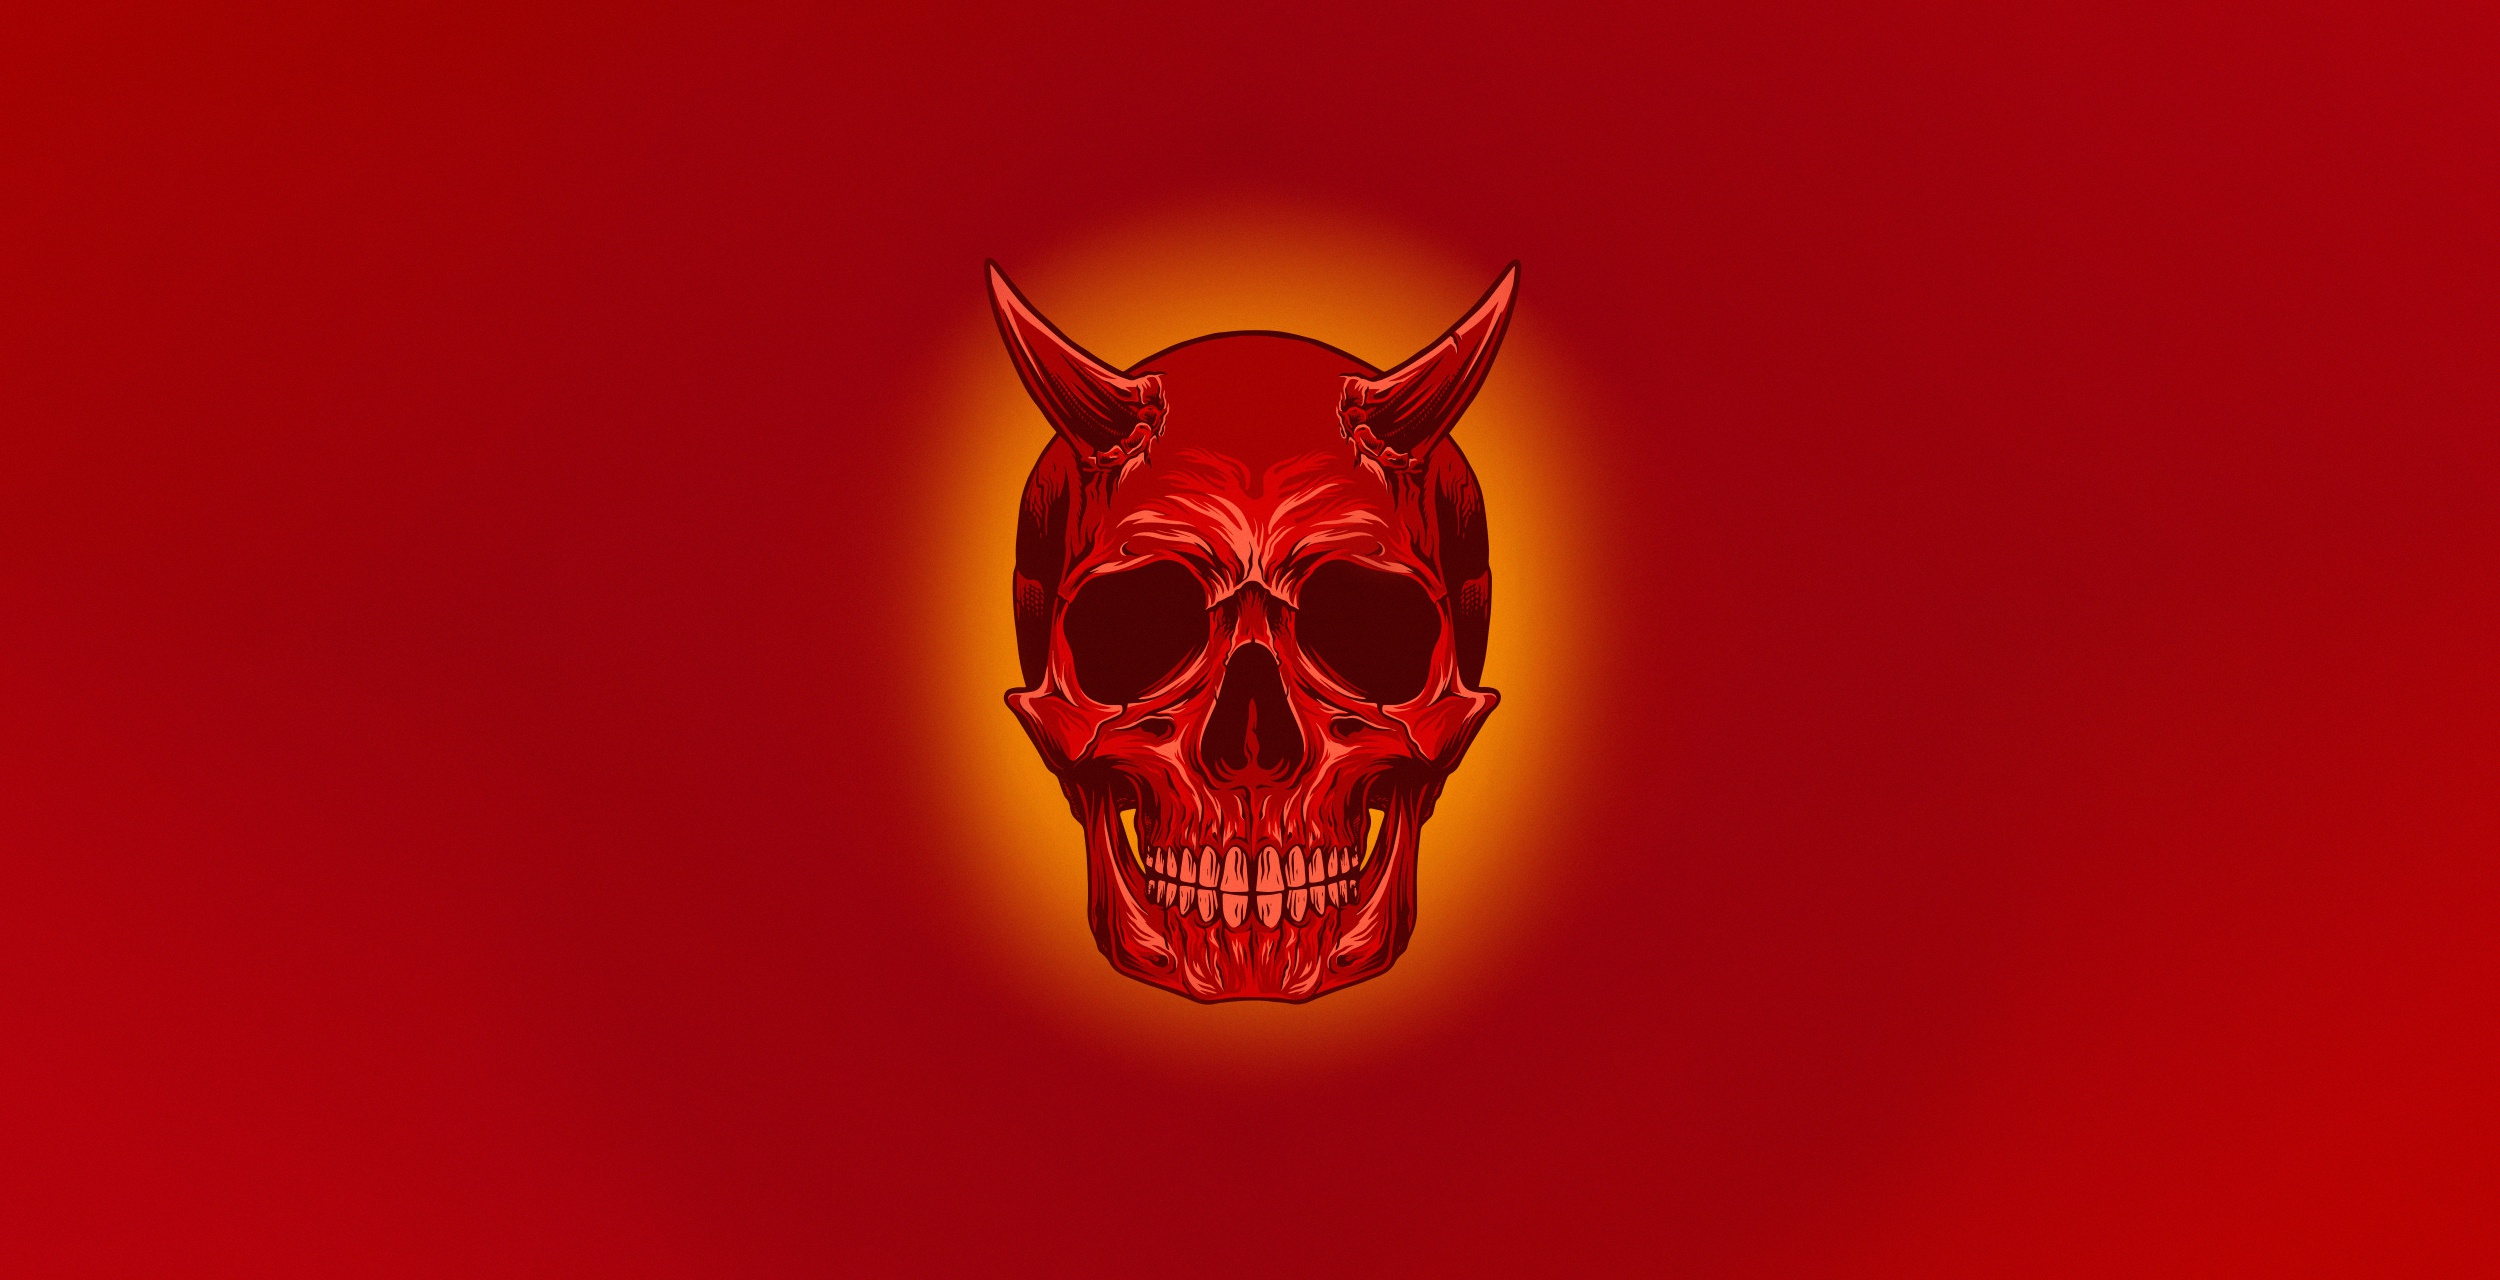 Red devil skull